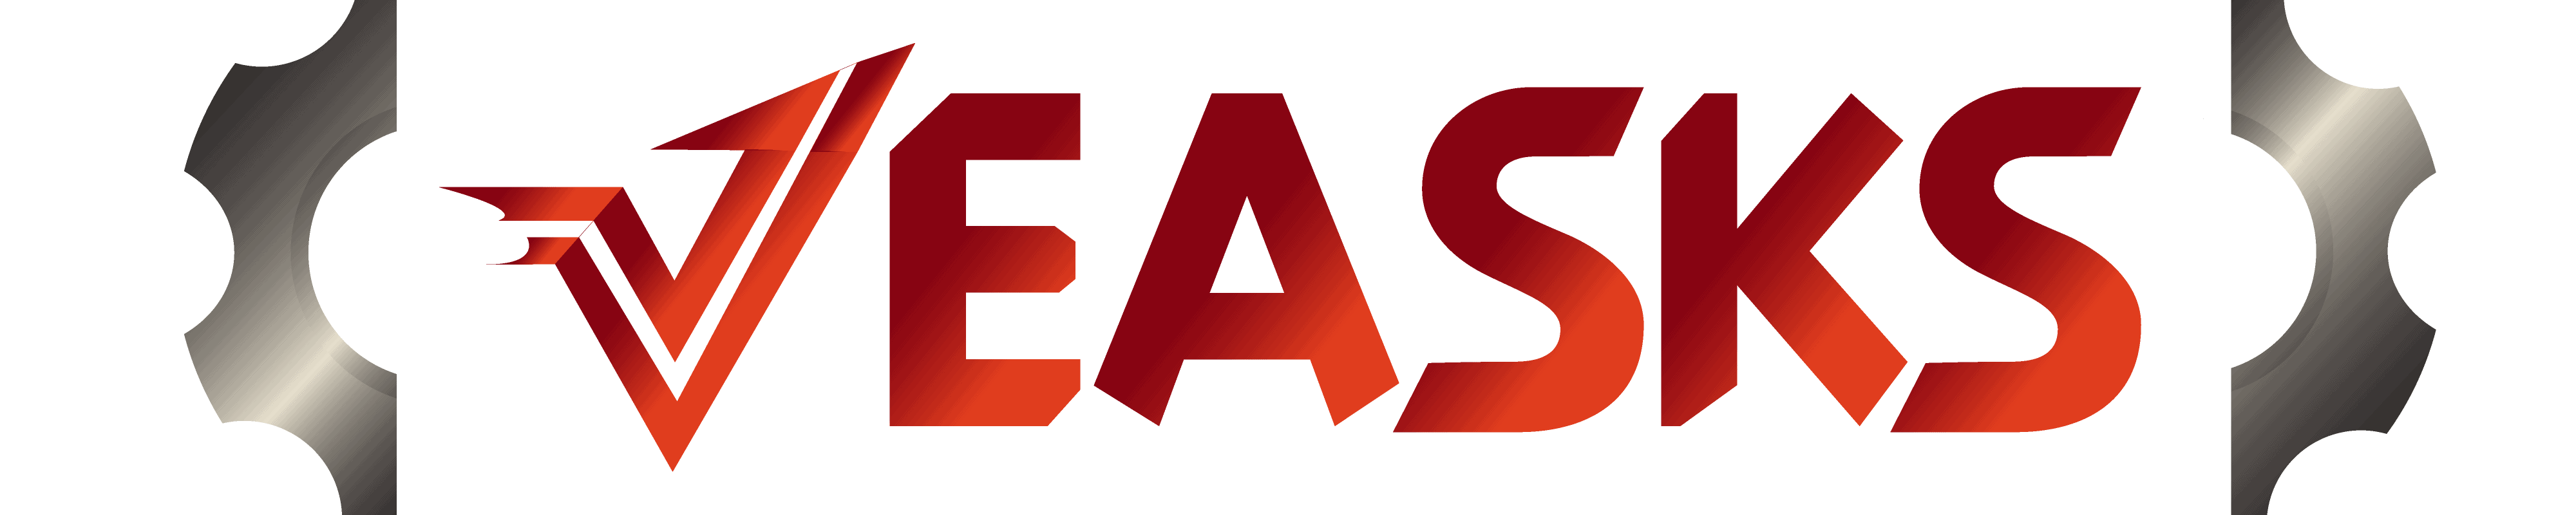 VEASKS logo